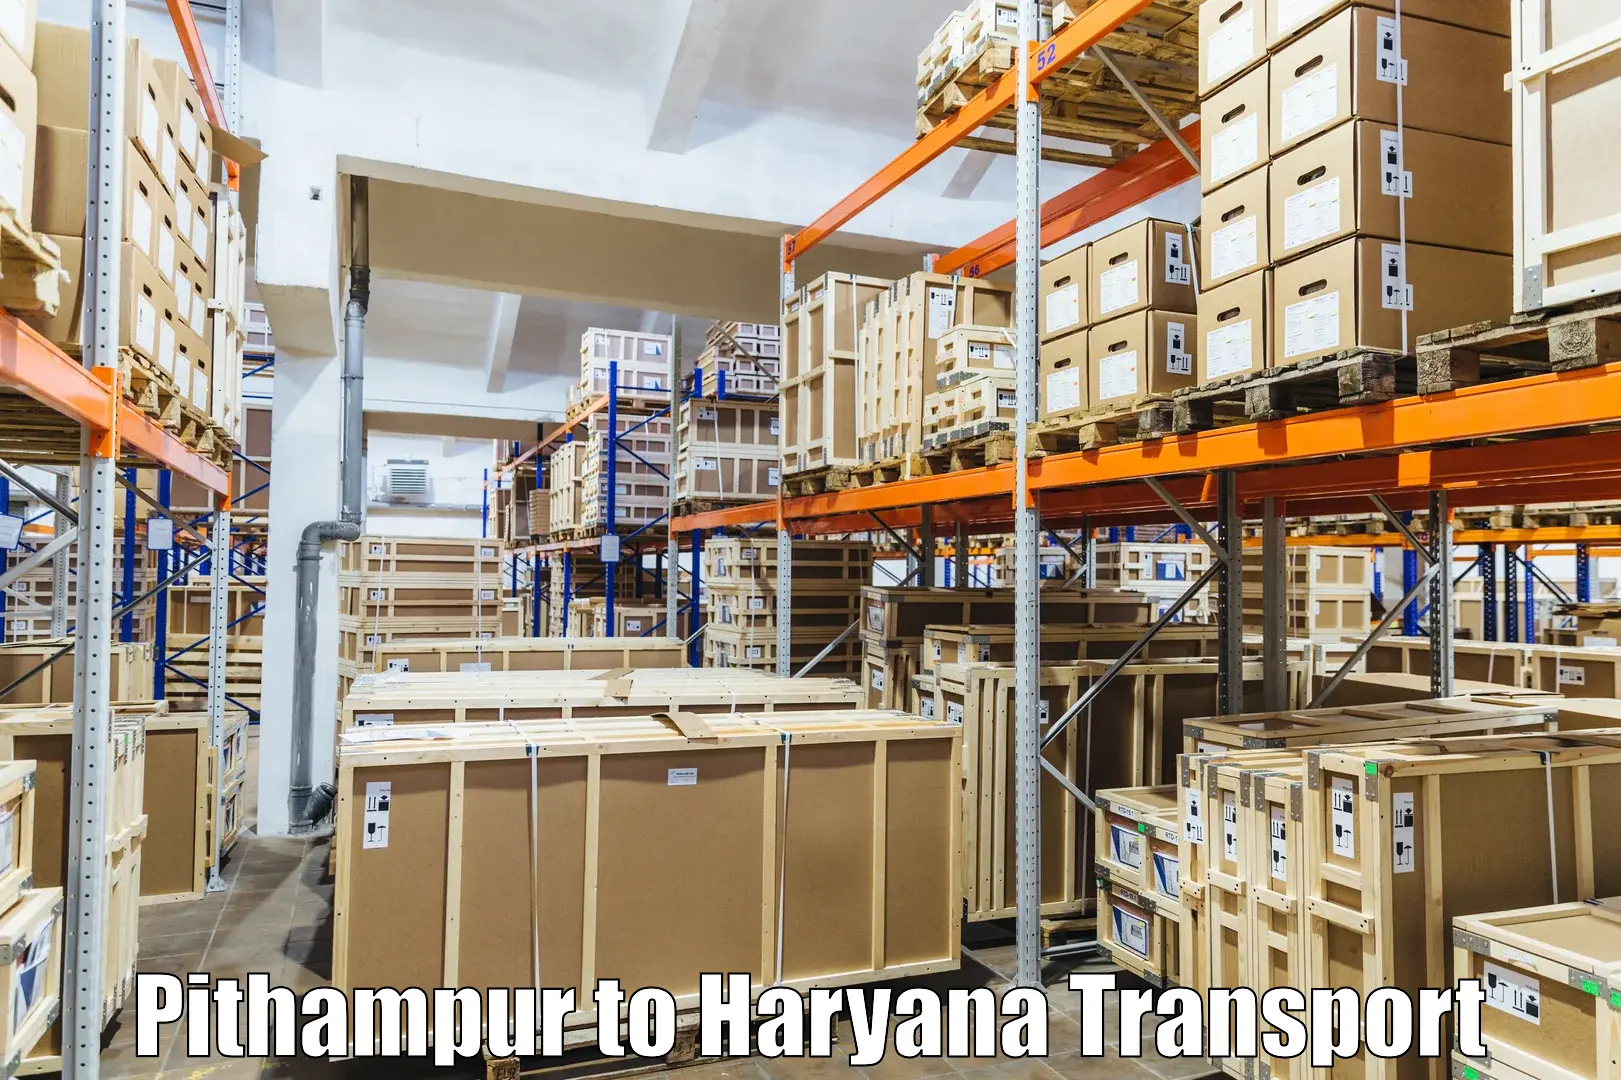 Daily transport service Pithampur to Mandi Dabwali